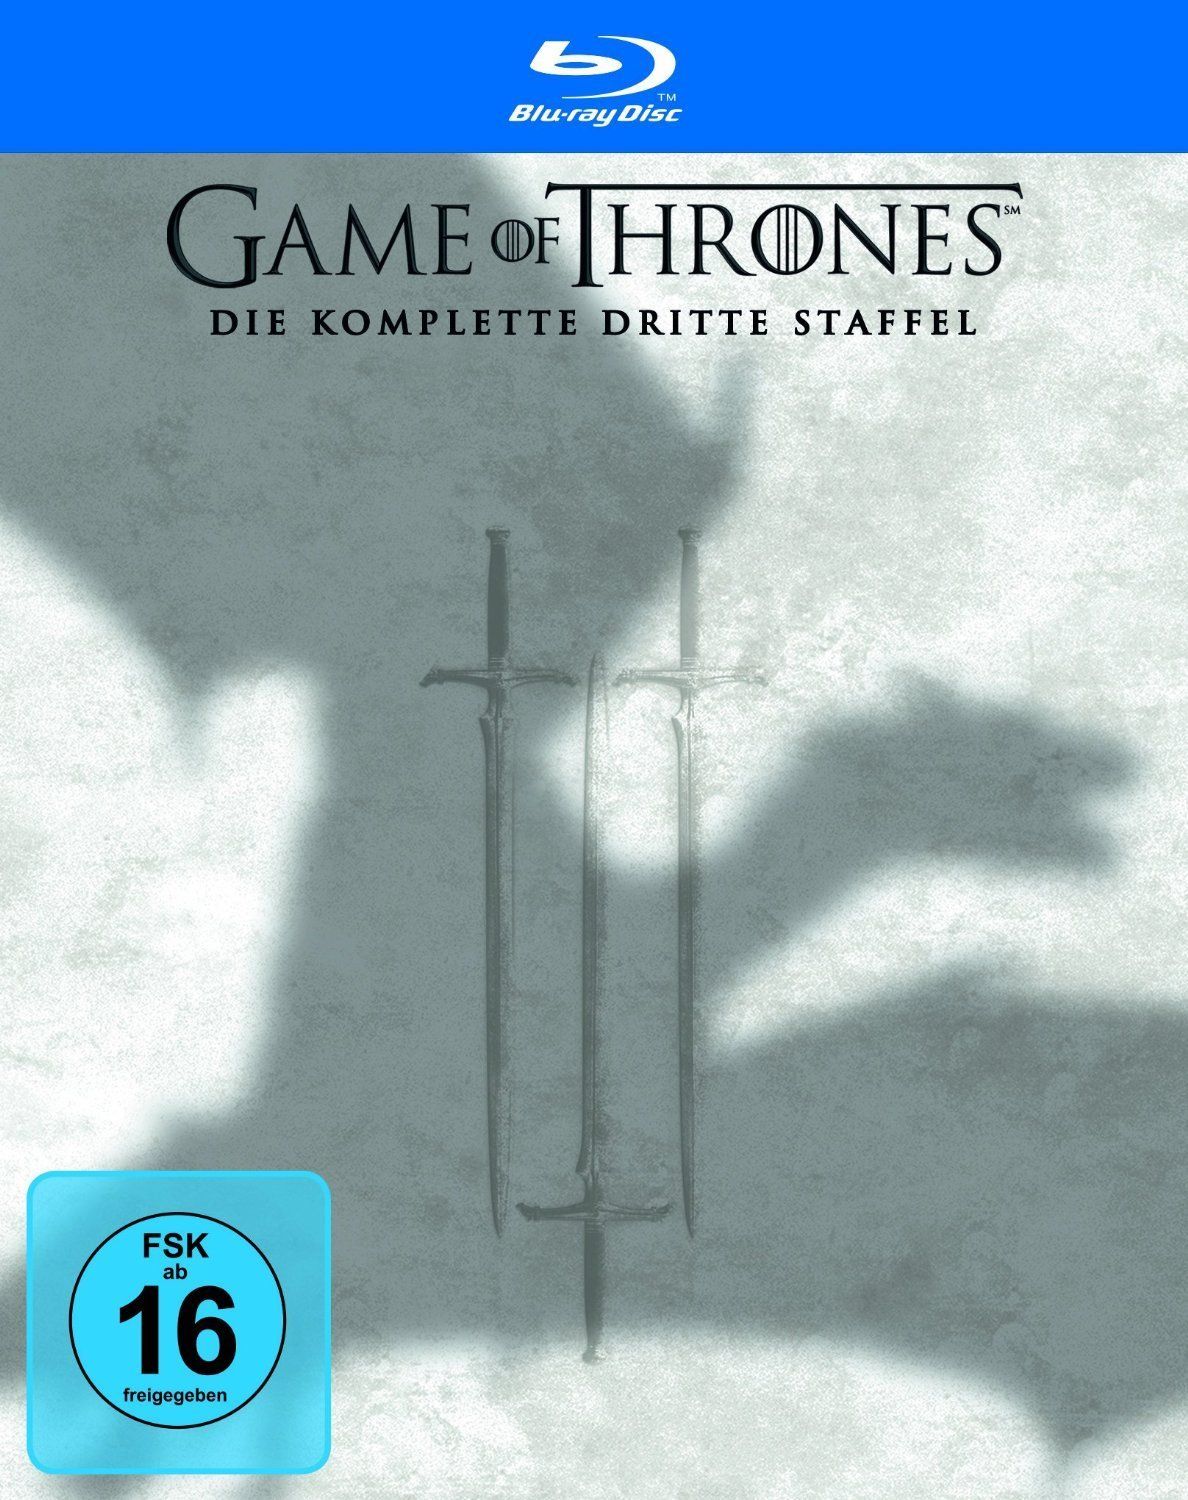 Game of Thrones - Die komplette dritte Staffel (Neuauflage) (5 Discs) (BLURAY)